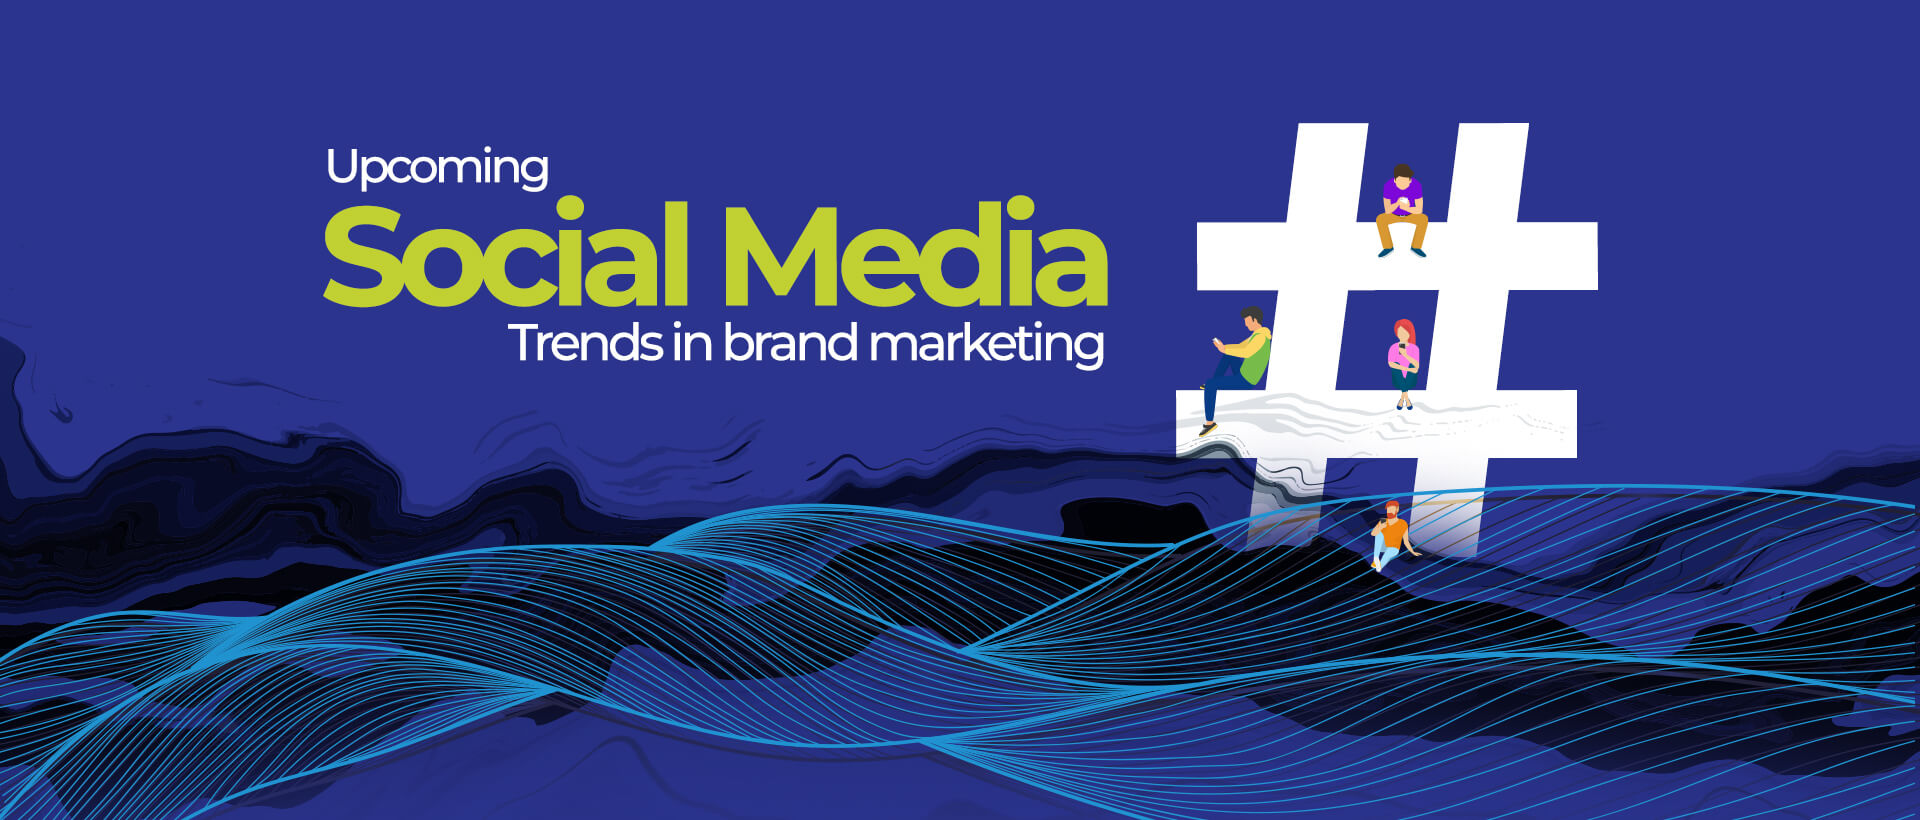 Upcoming Social Media Trends in brand marketing